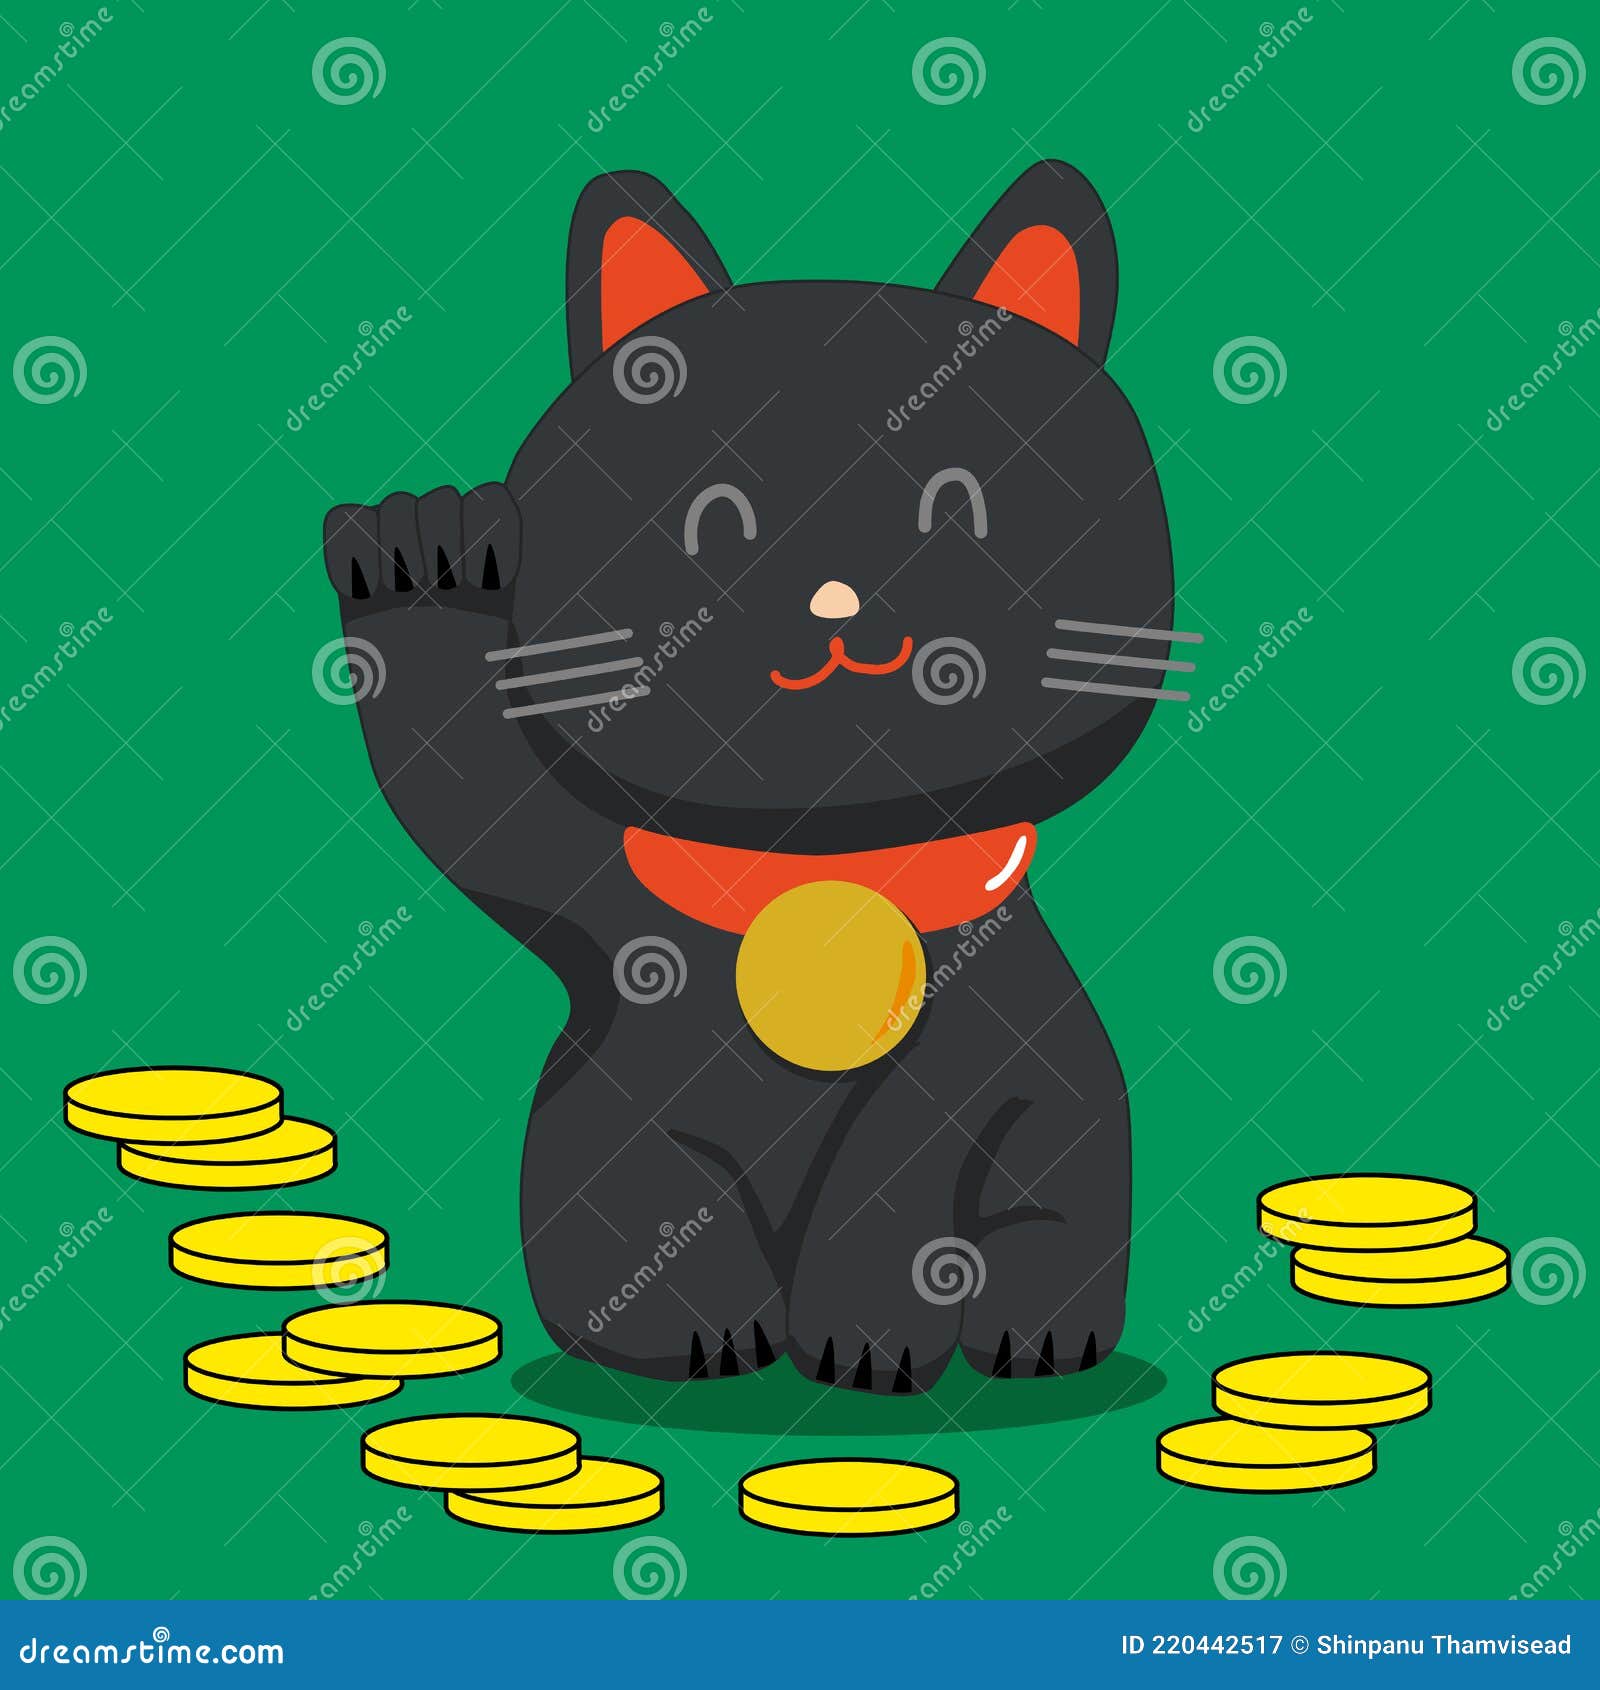 Vectores e ilustraciones de Gato suerte chino para descargar gratis